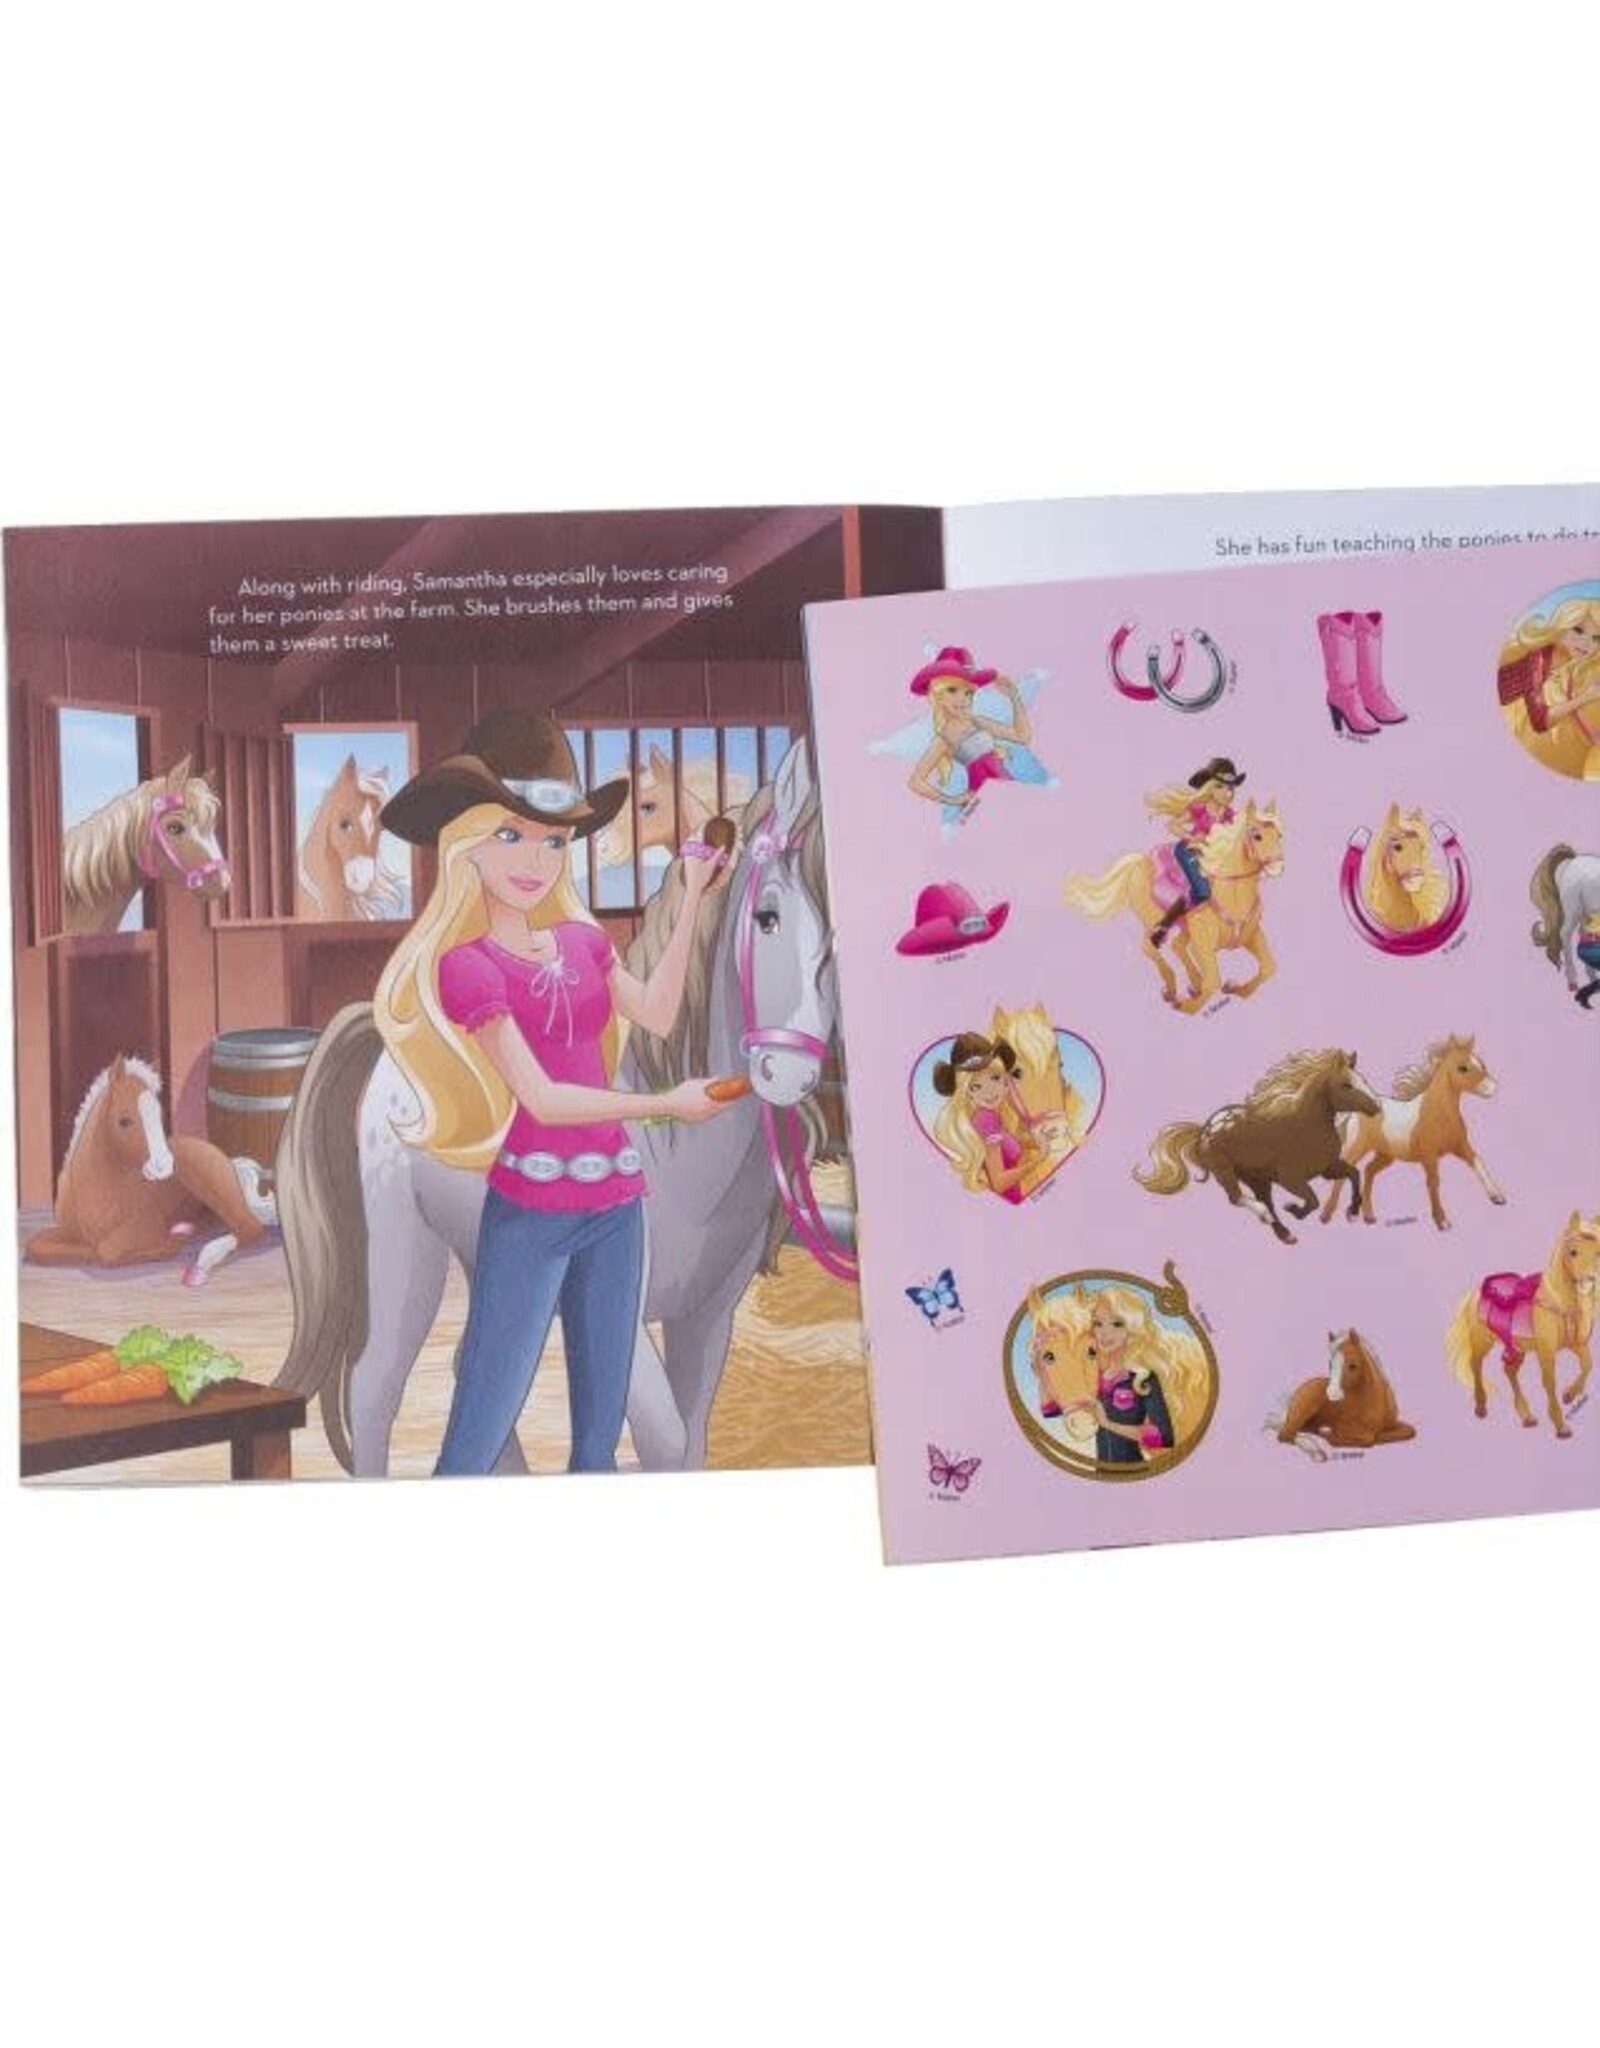 Barbie Ponytails Sticker Book